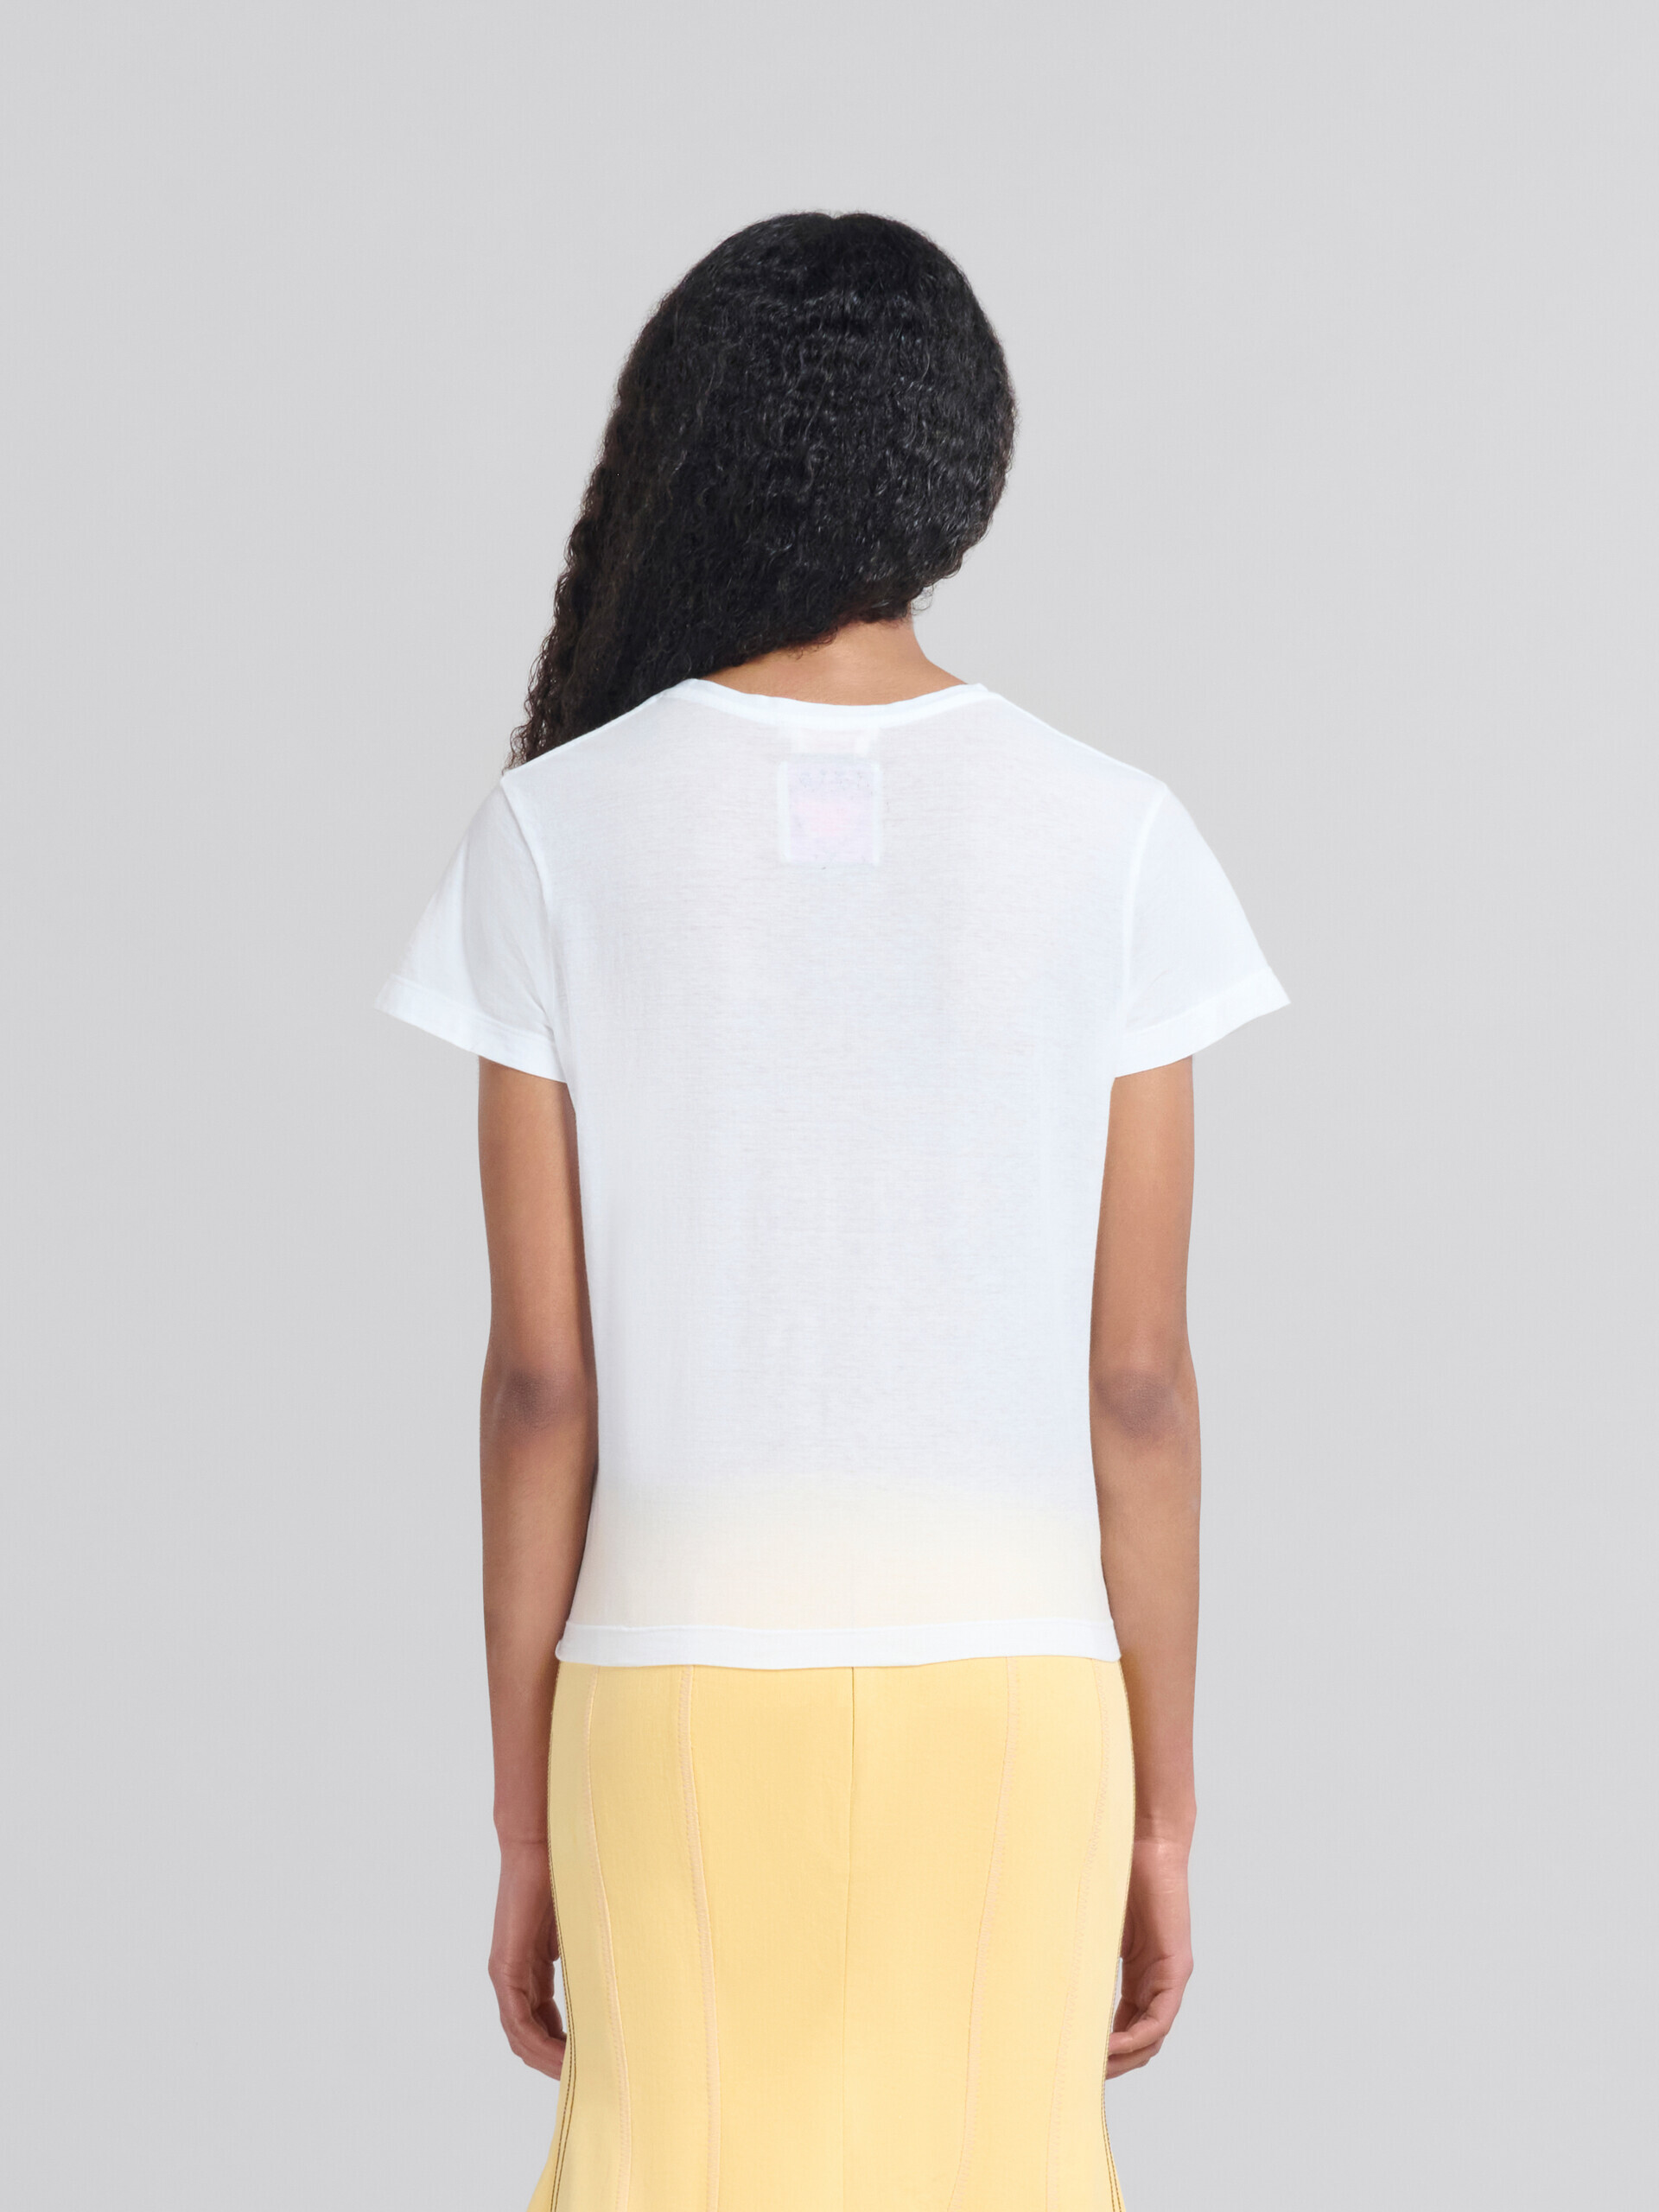 Camiseta de corte slim de algodón orgánico blanca con estampado - Camisetas - Image 3